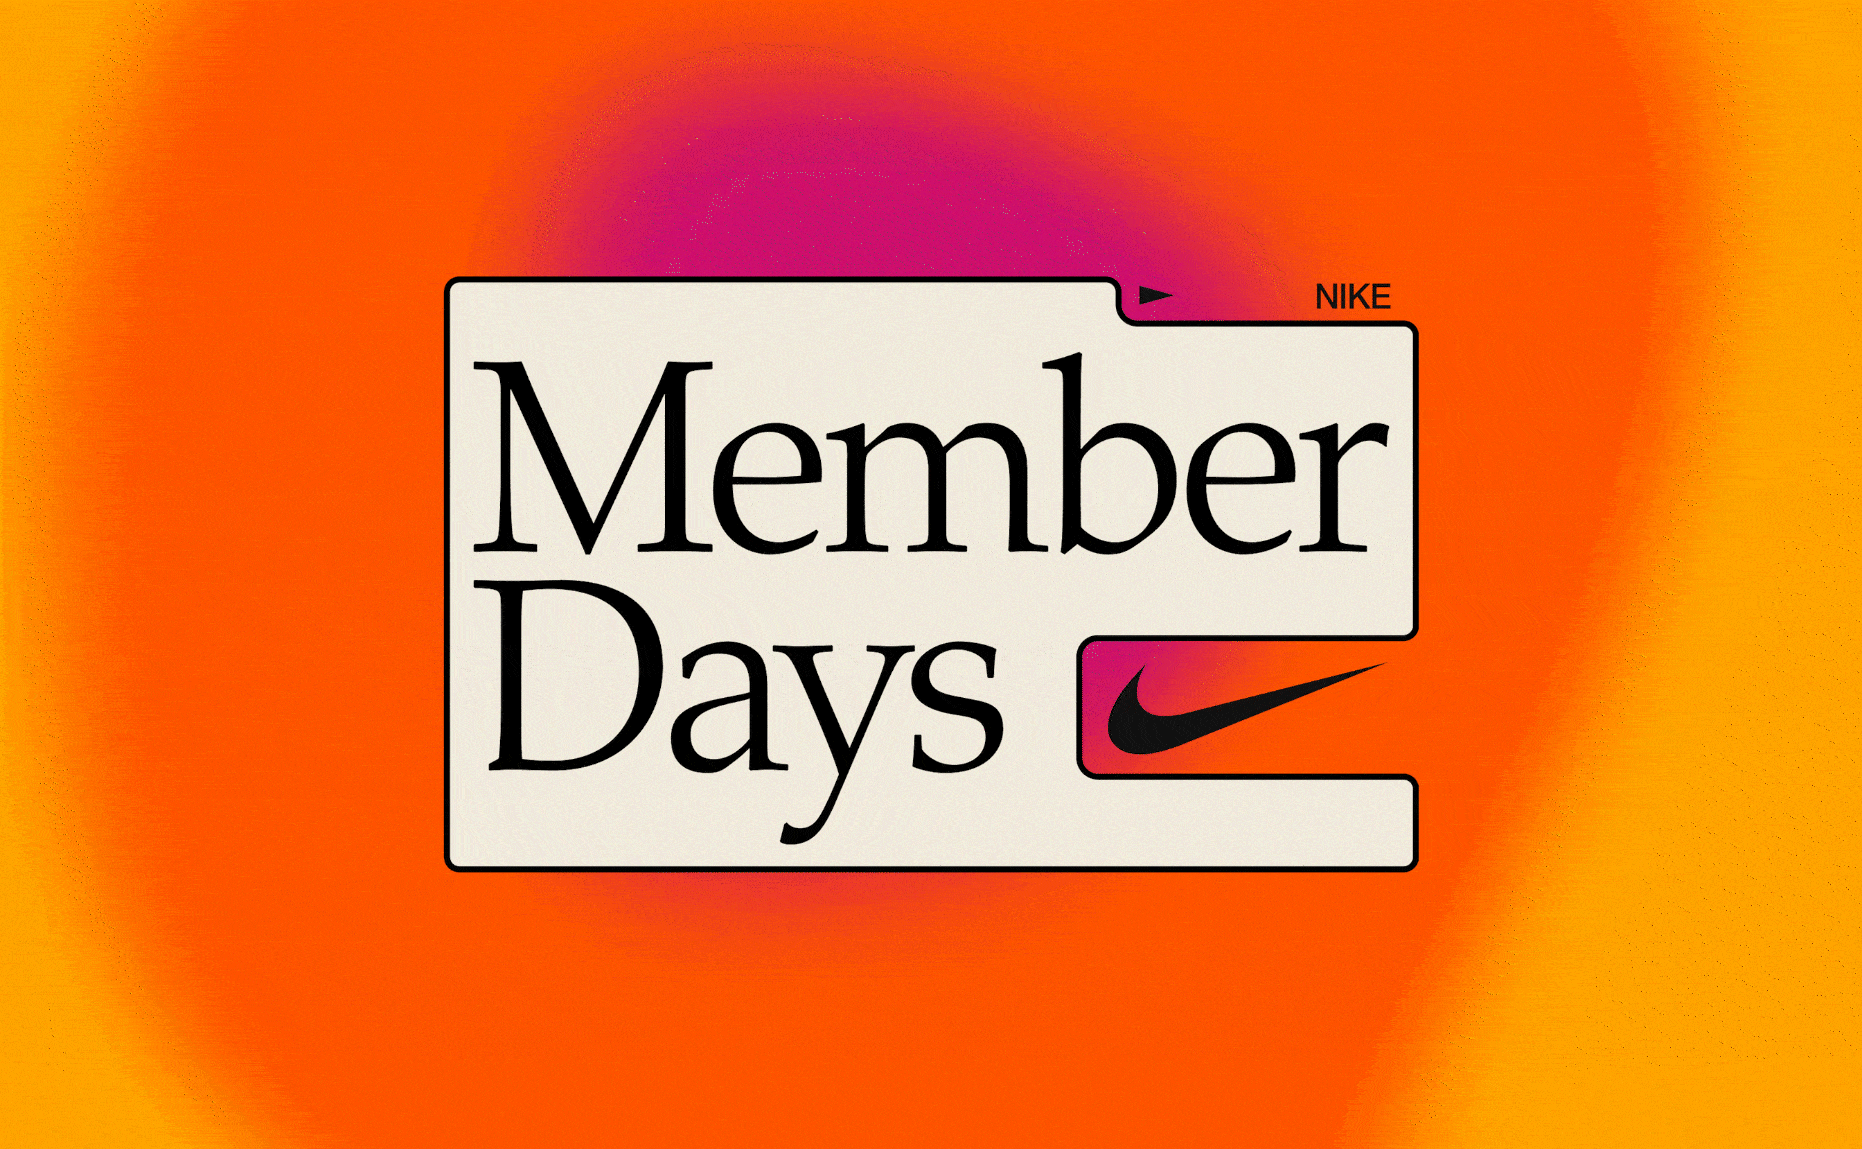 Nike - Member Days